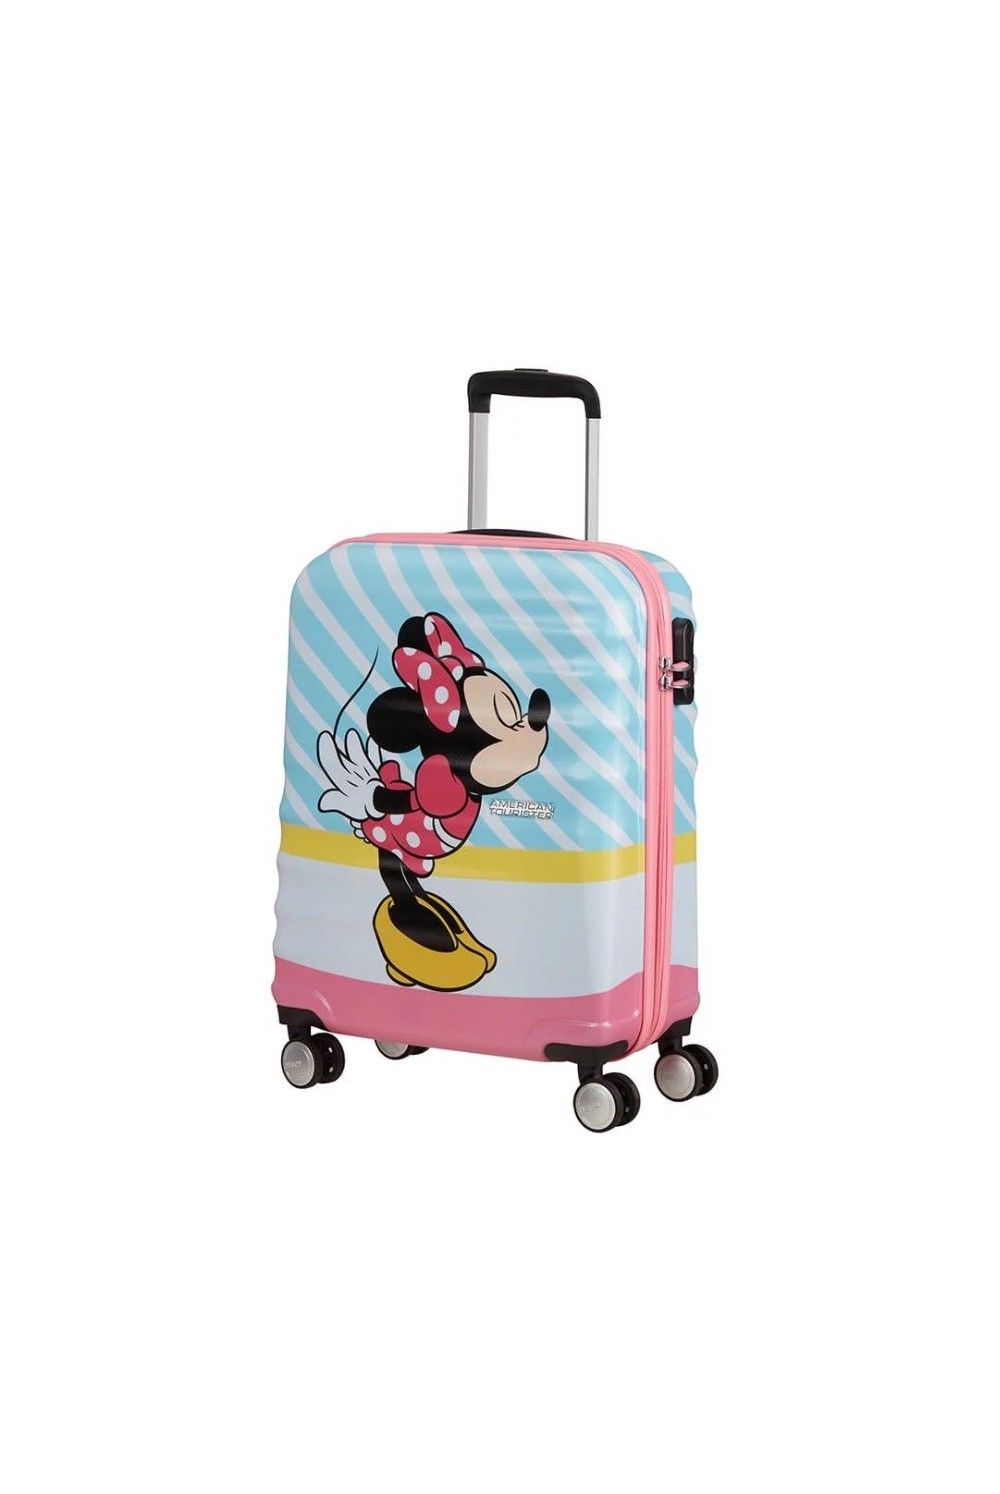 AT Disney Minnie Pink Kiss 55 4 Rad Handgepäck